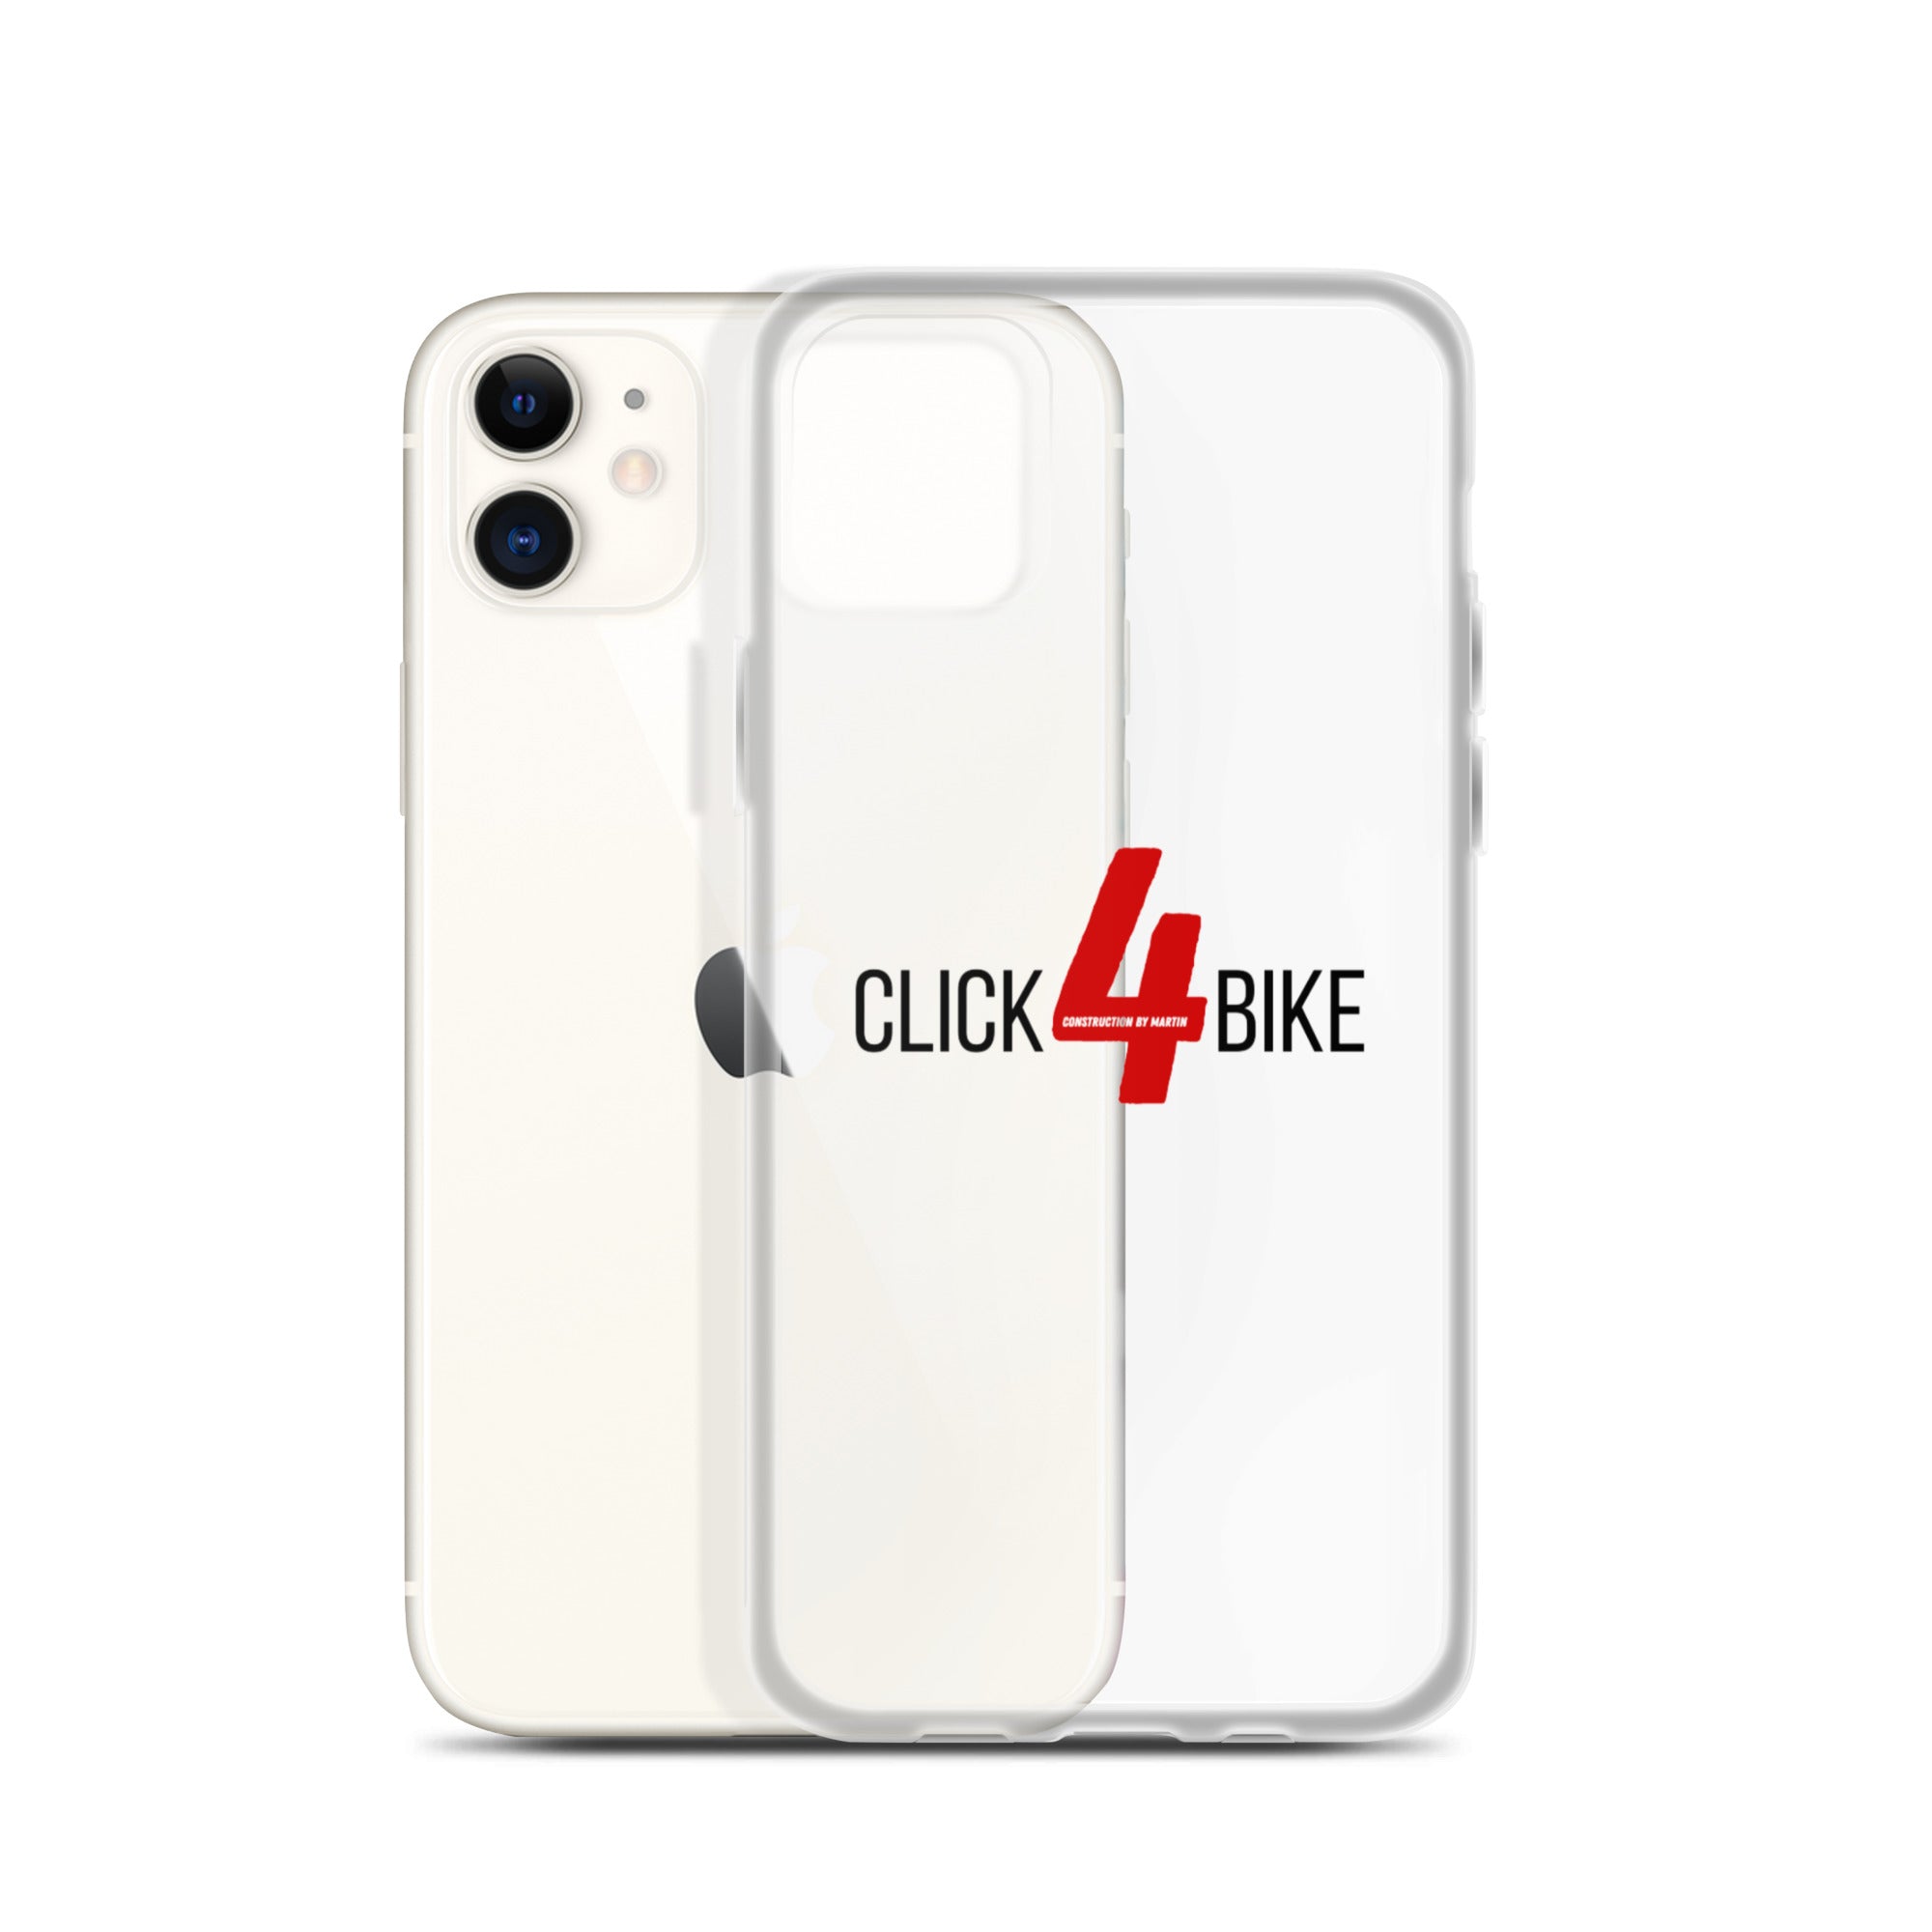  iphone hüllen-Click4Bike